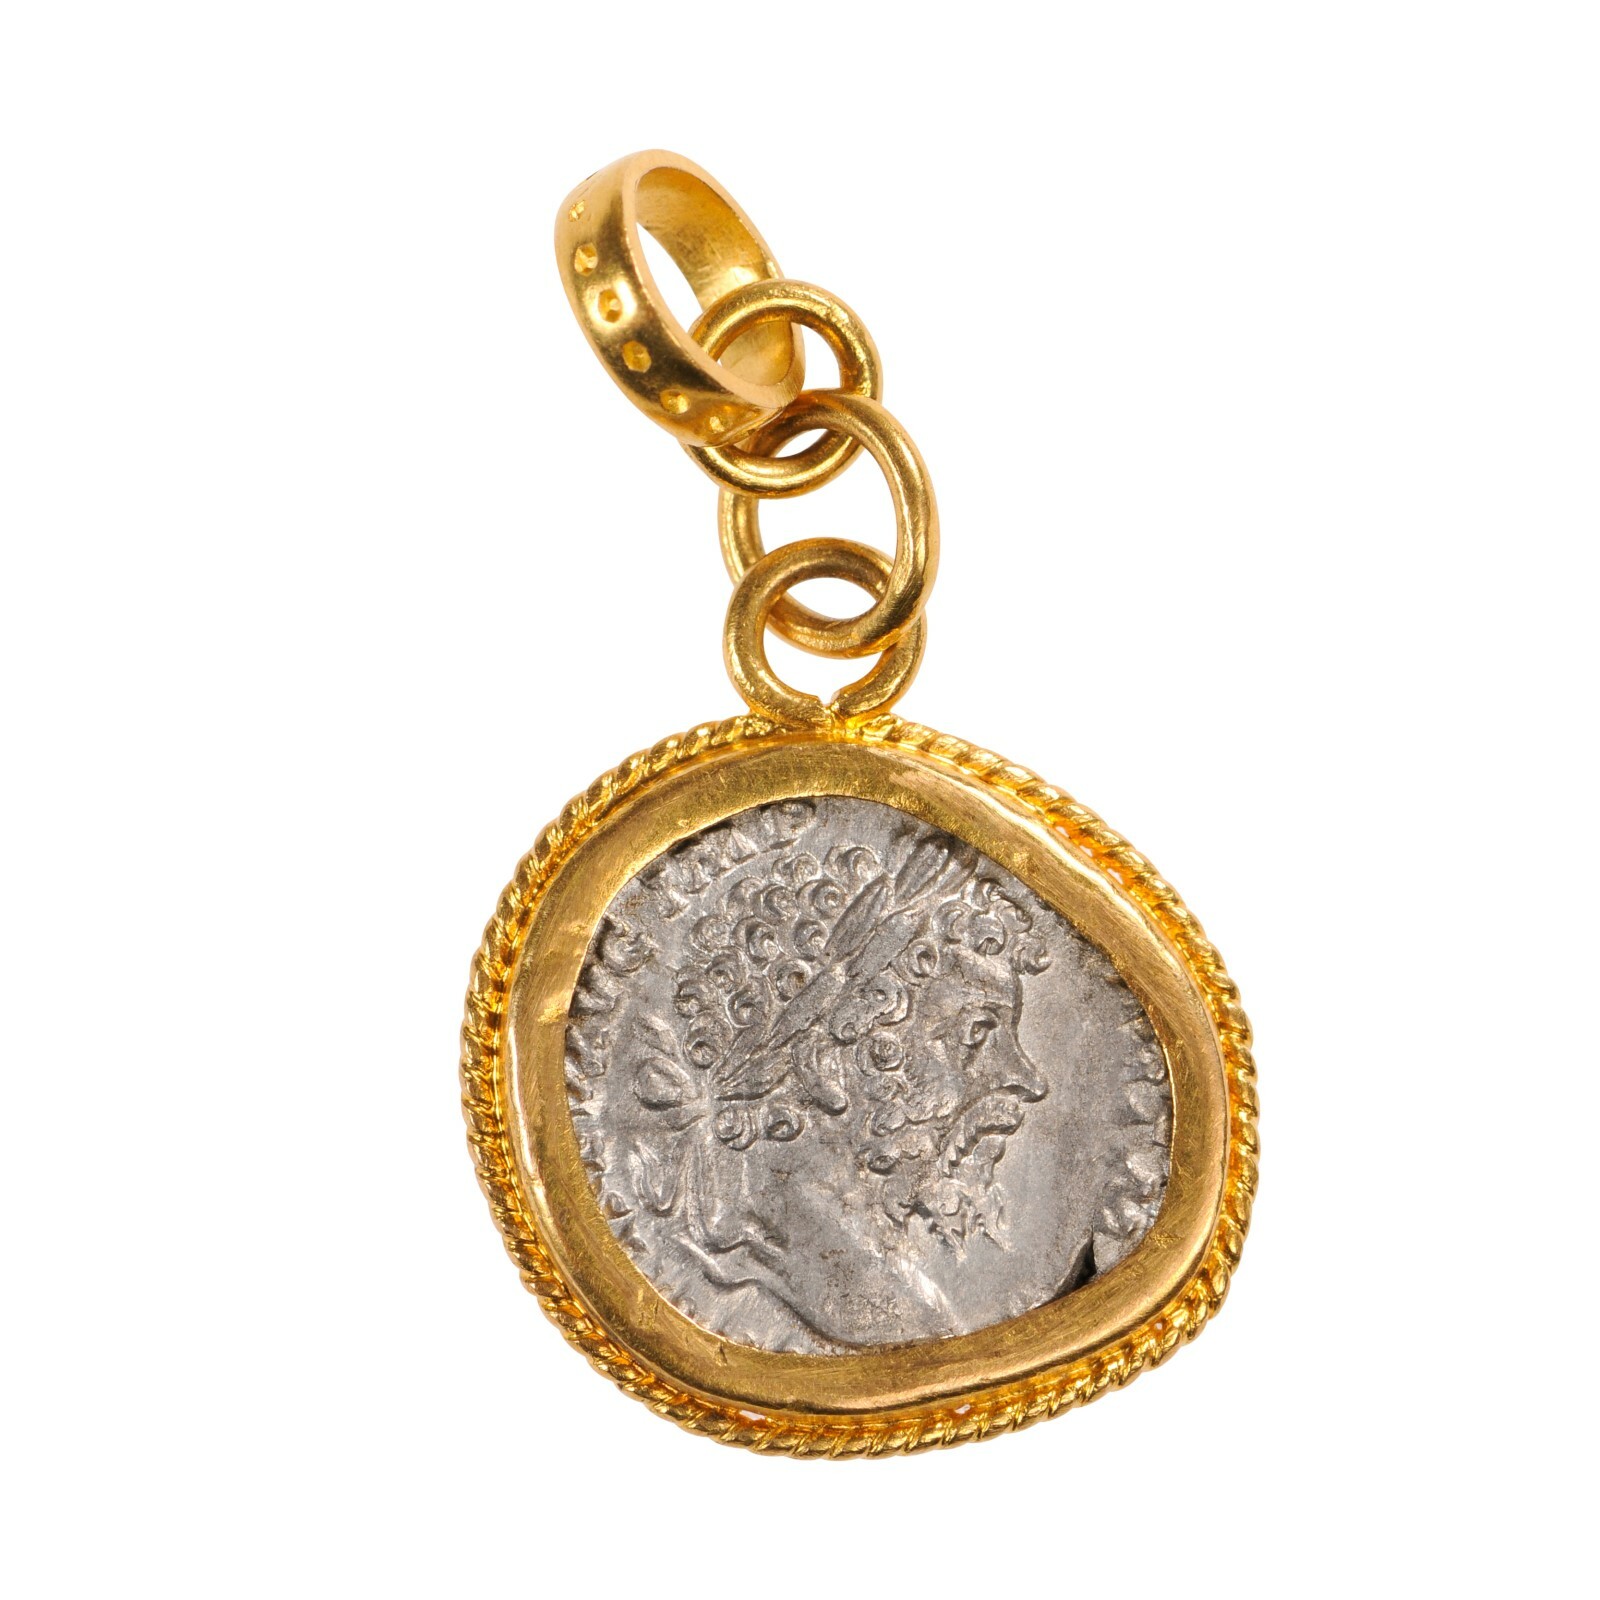 A Roman Silver Coin Pendant